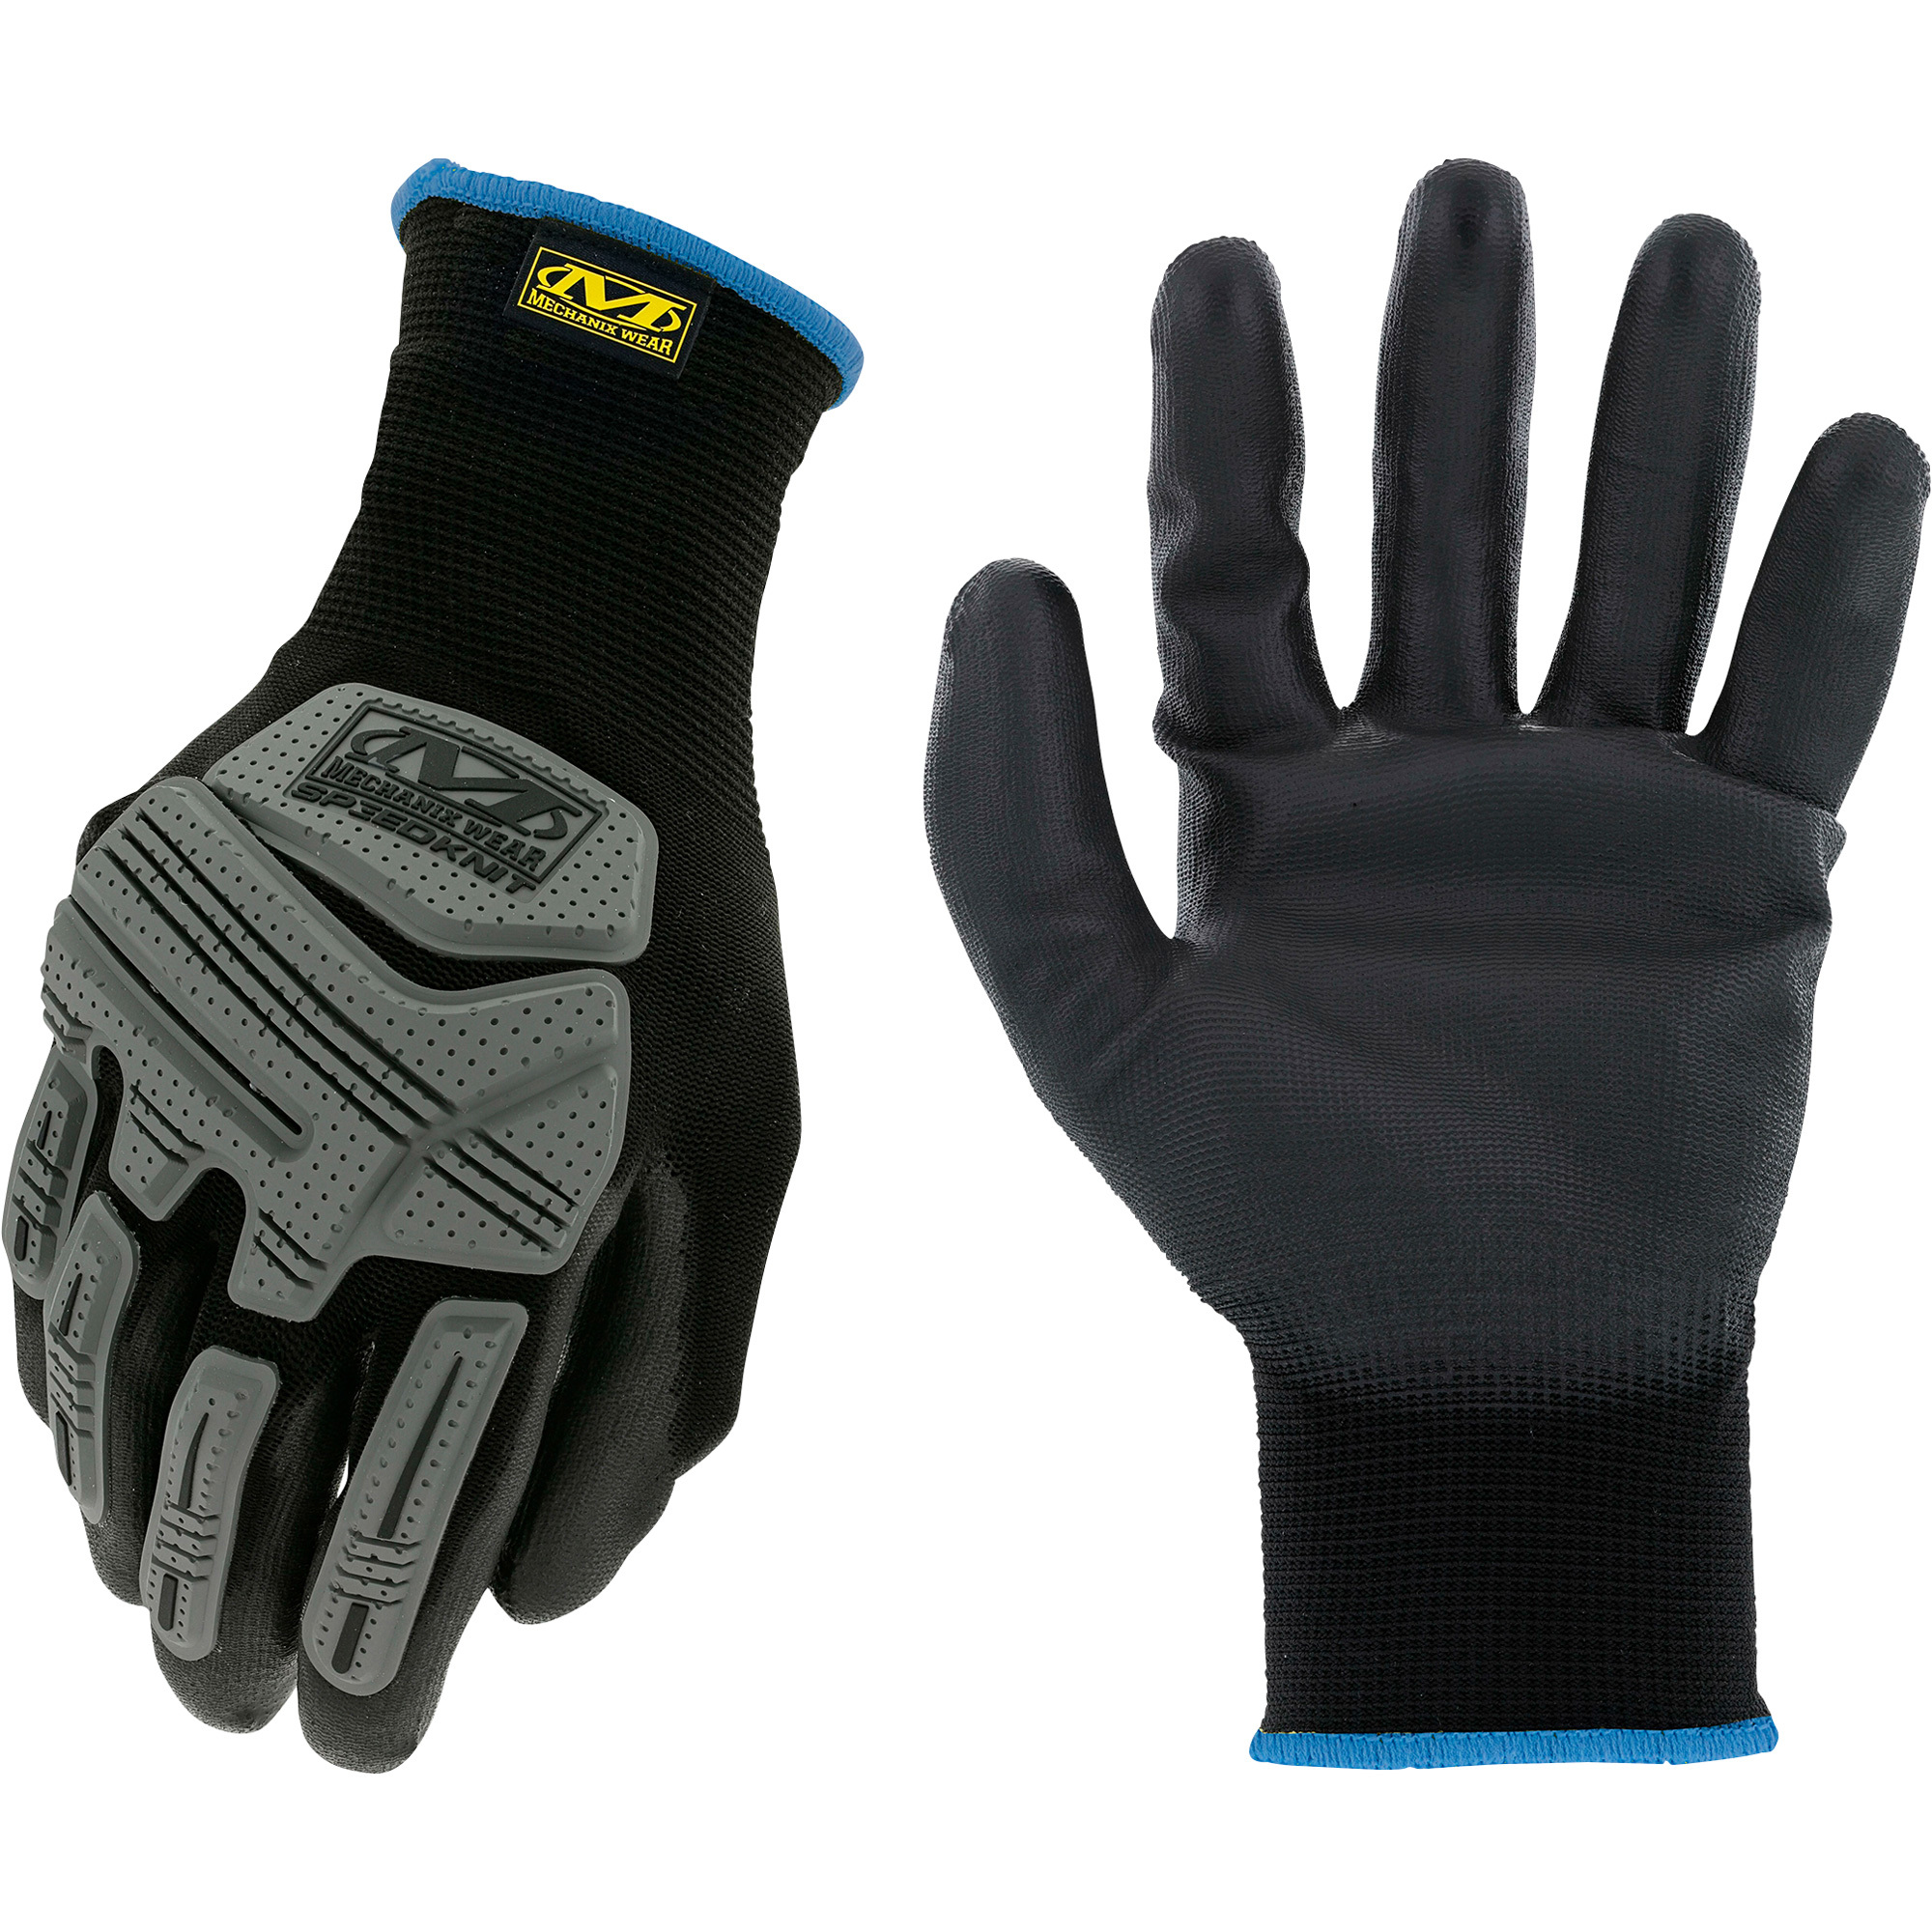 Mechanix Wear Men's SpeedKnit Impact Work Gloves â Black, Large/XL, Model 575246291